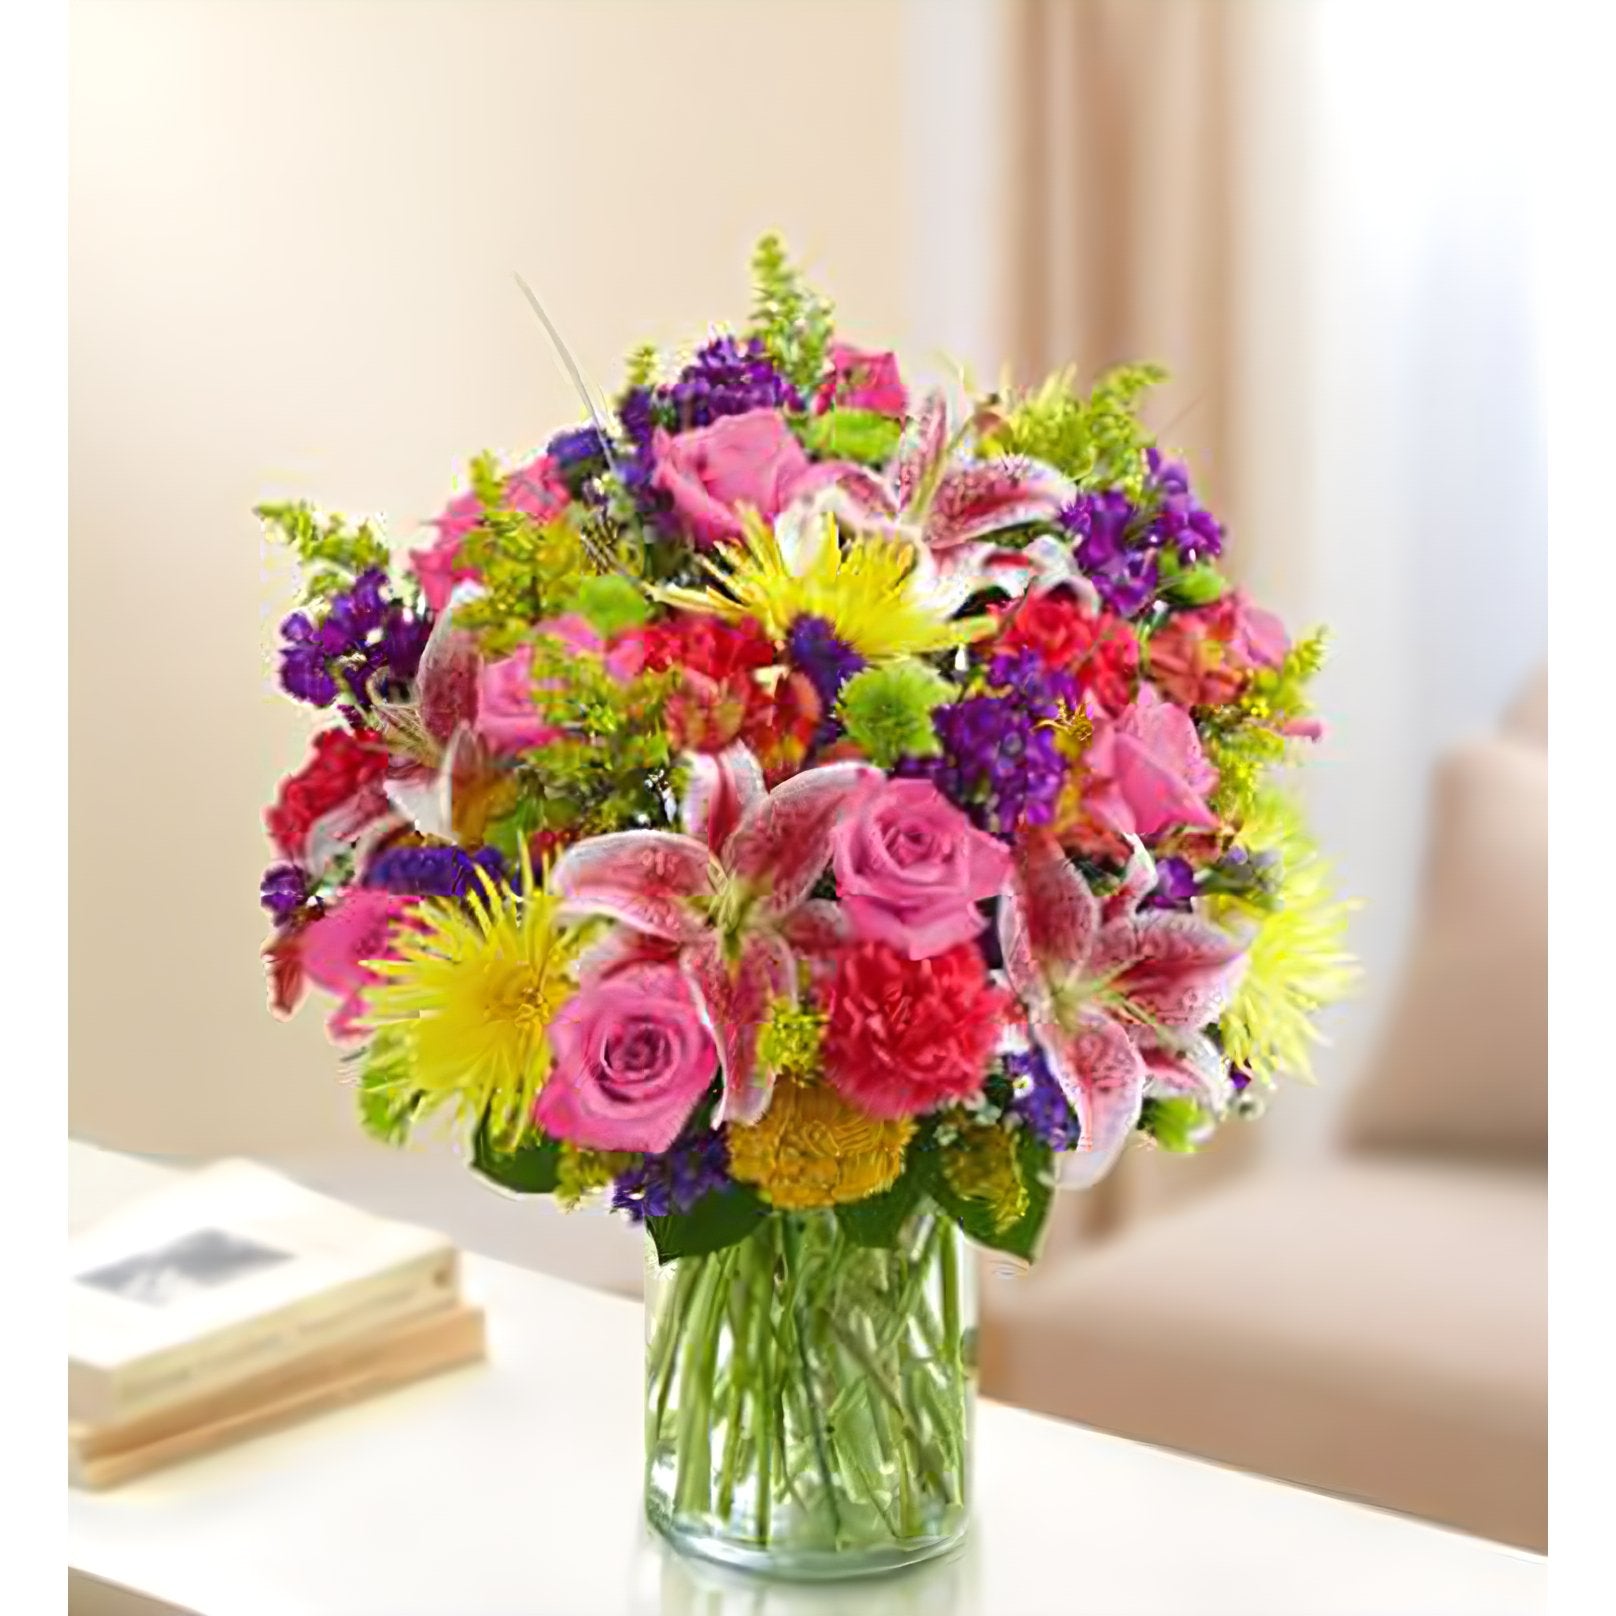 Sincerest Sorrow Bright Arrangement - Funeral > Vase Arrangements - Queens Flower Delivery